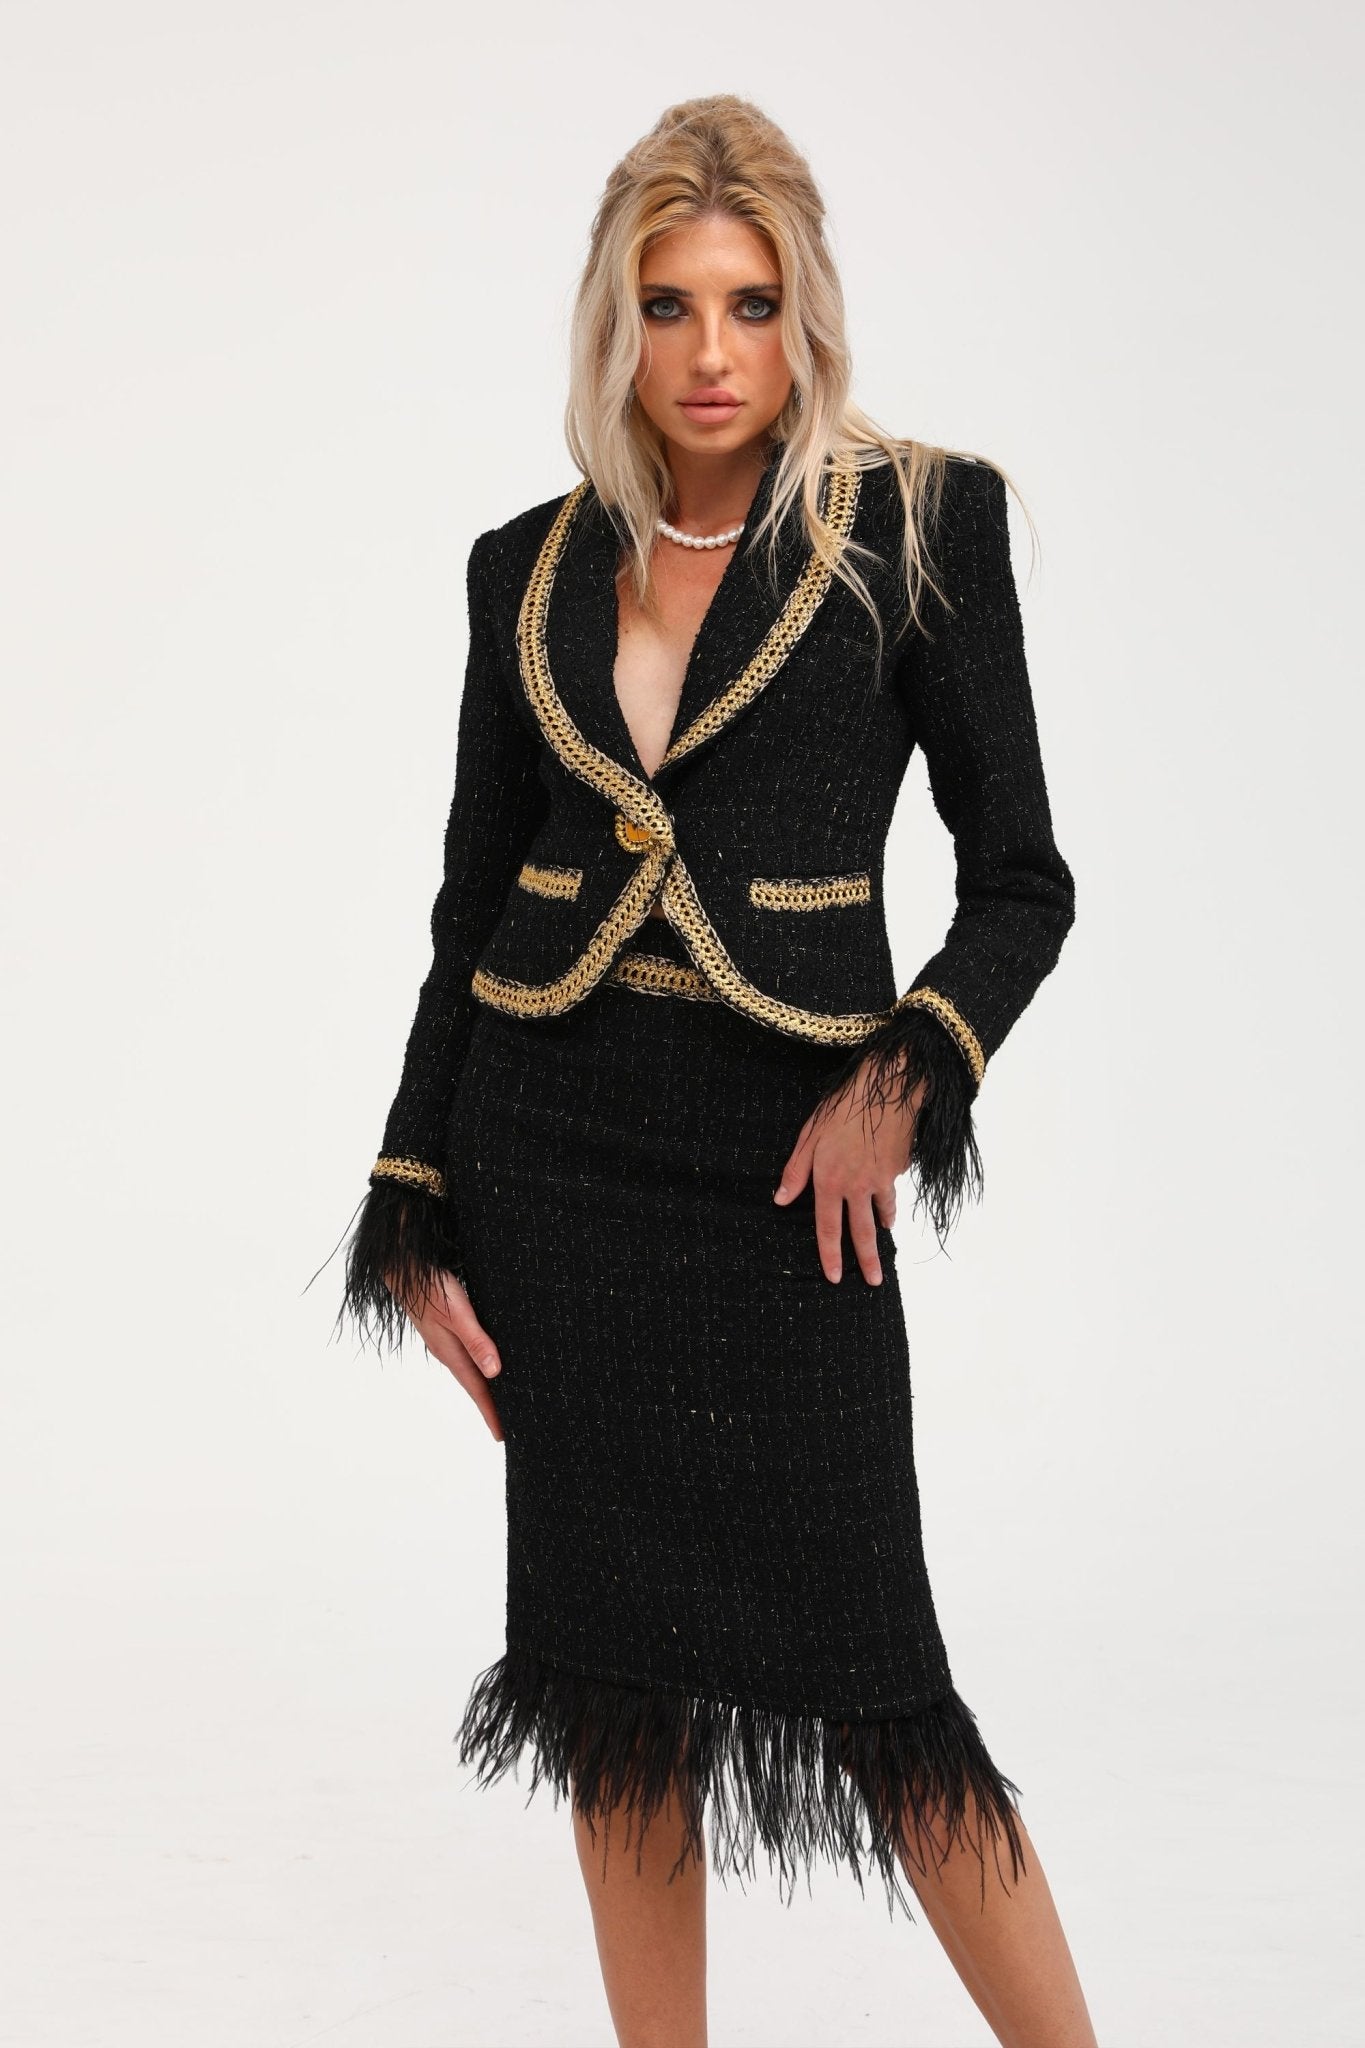 Maedhbh jacket & skirt matching set - Miss Rosier - Women's Online Boutique